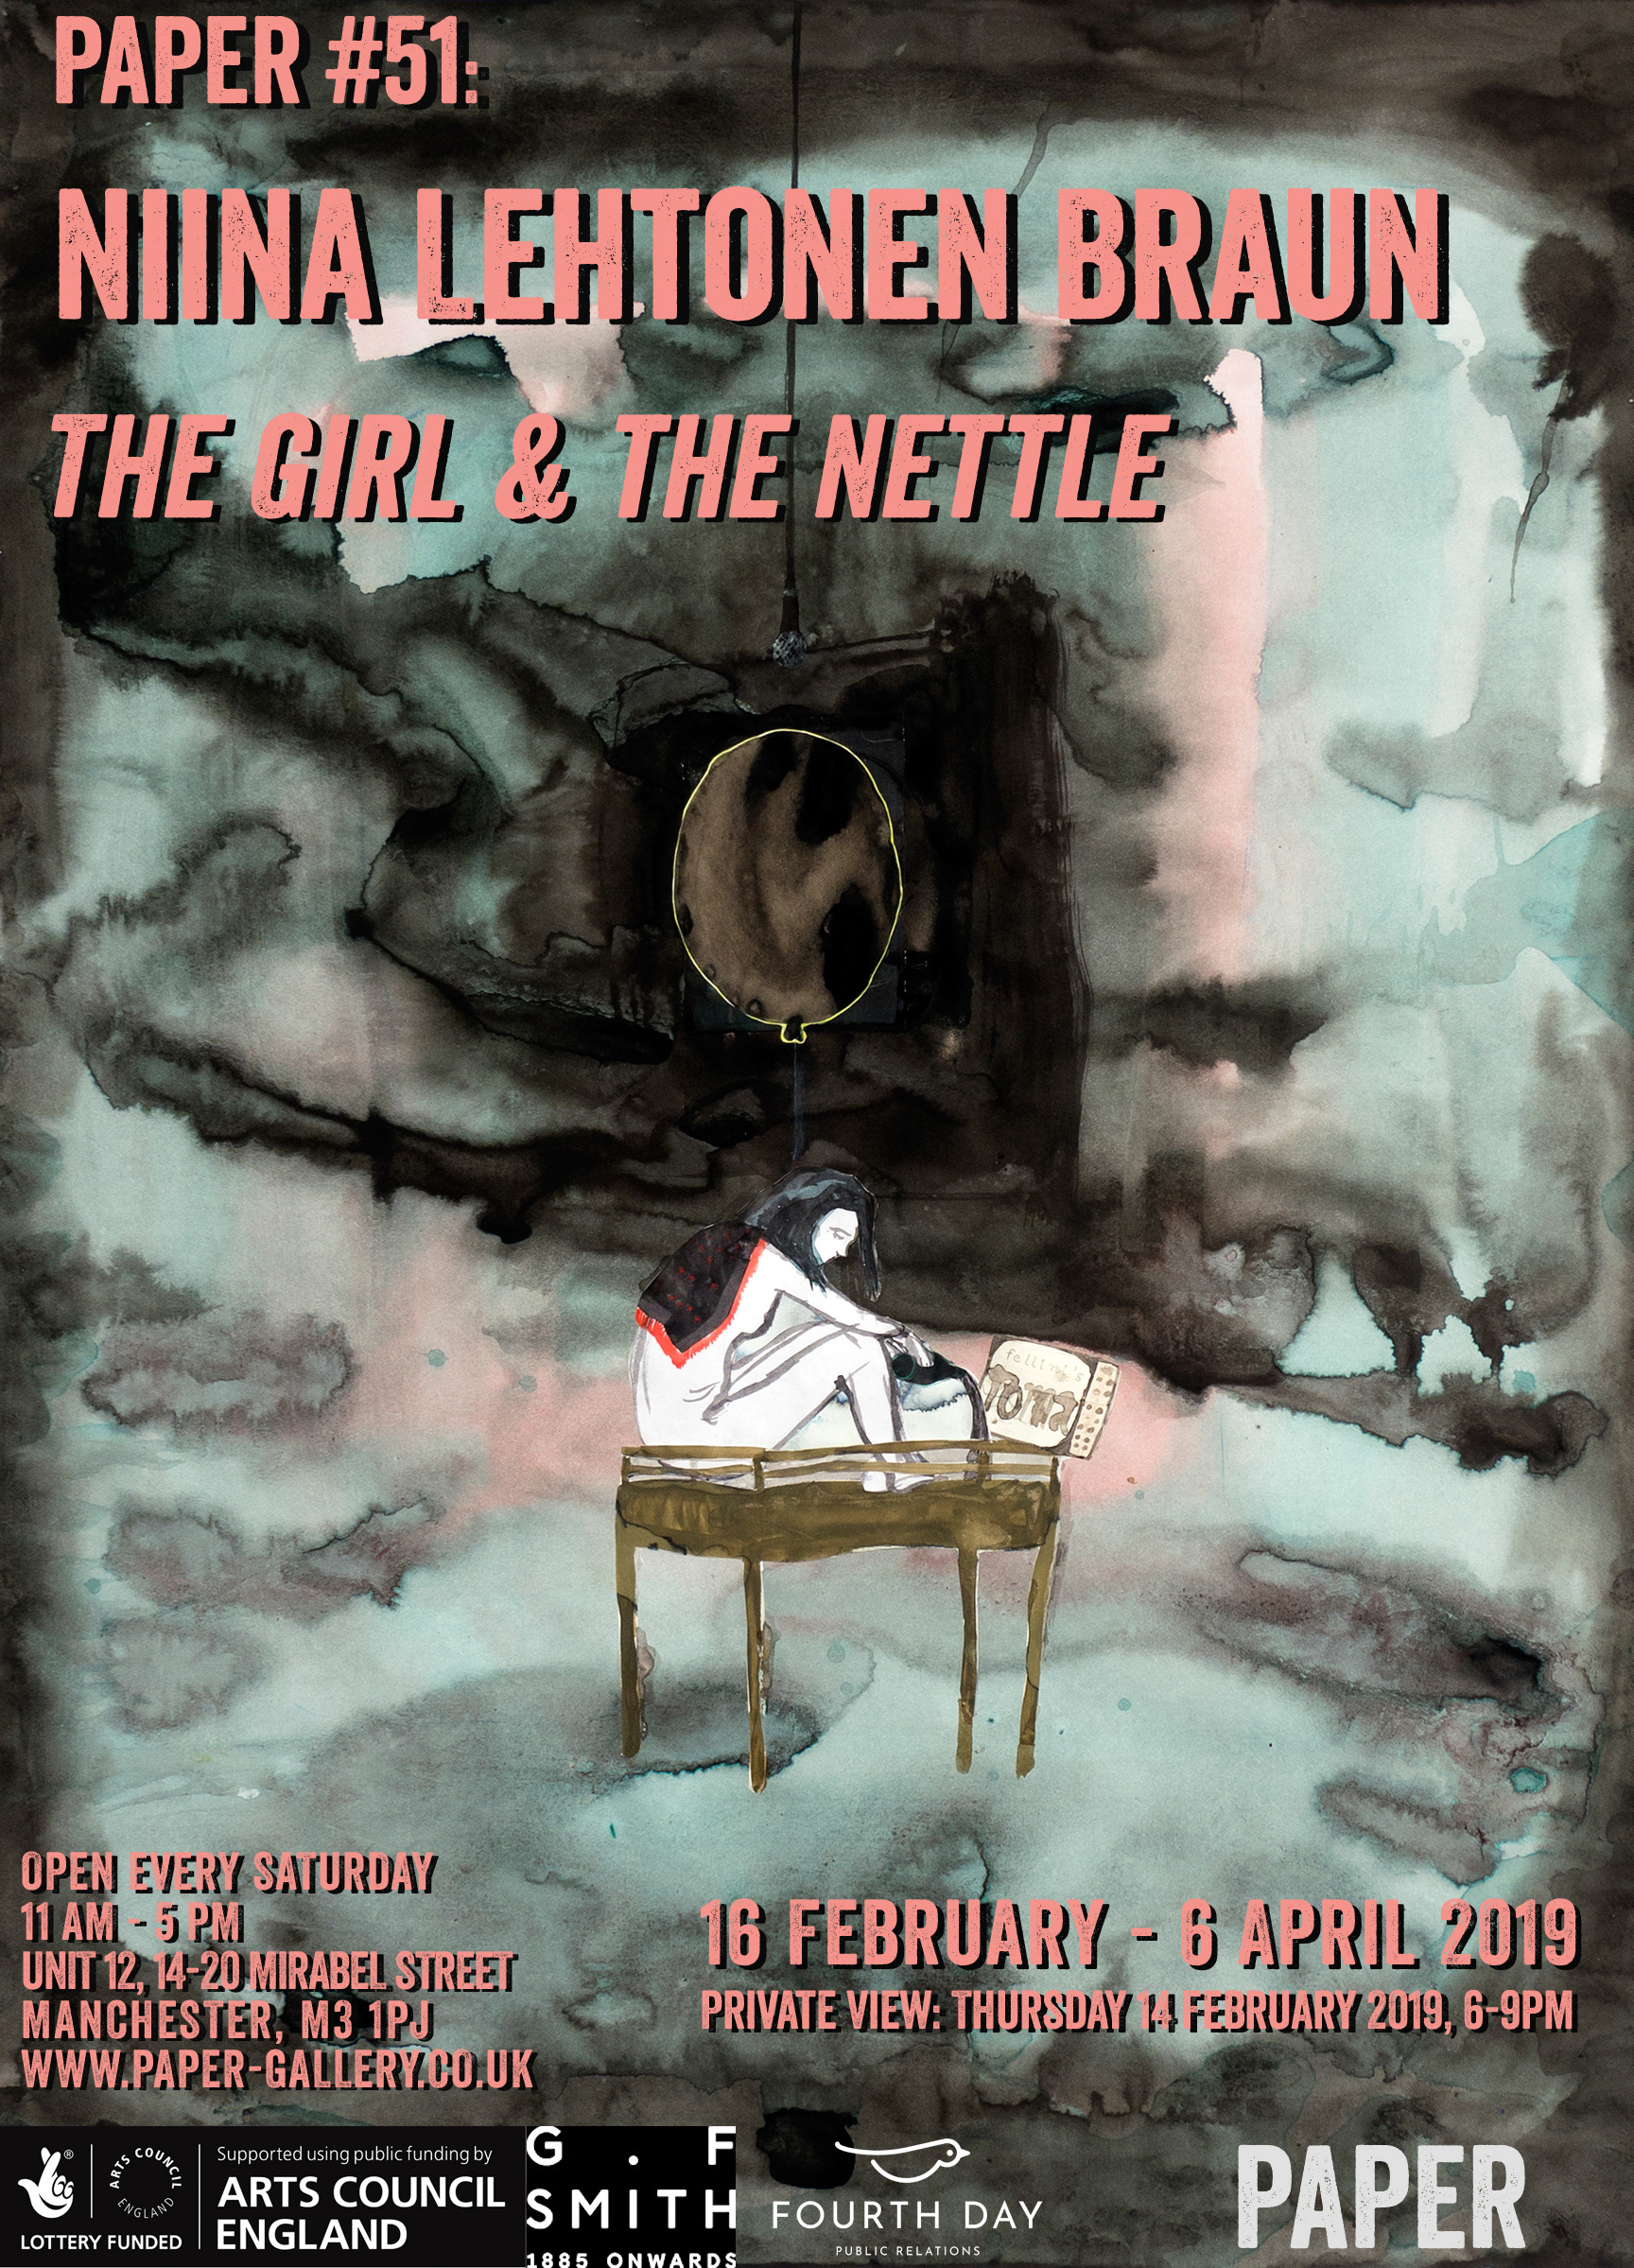 PAPER gallery - Niina Lehtonen Braun - The Girl & the Nettle